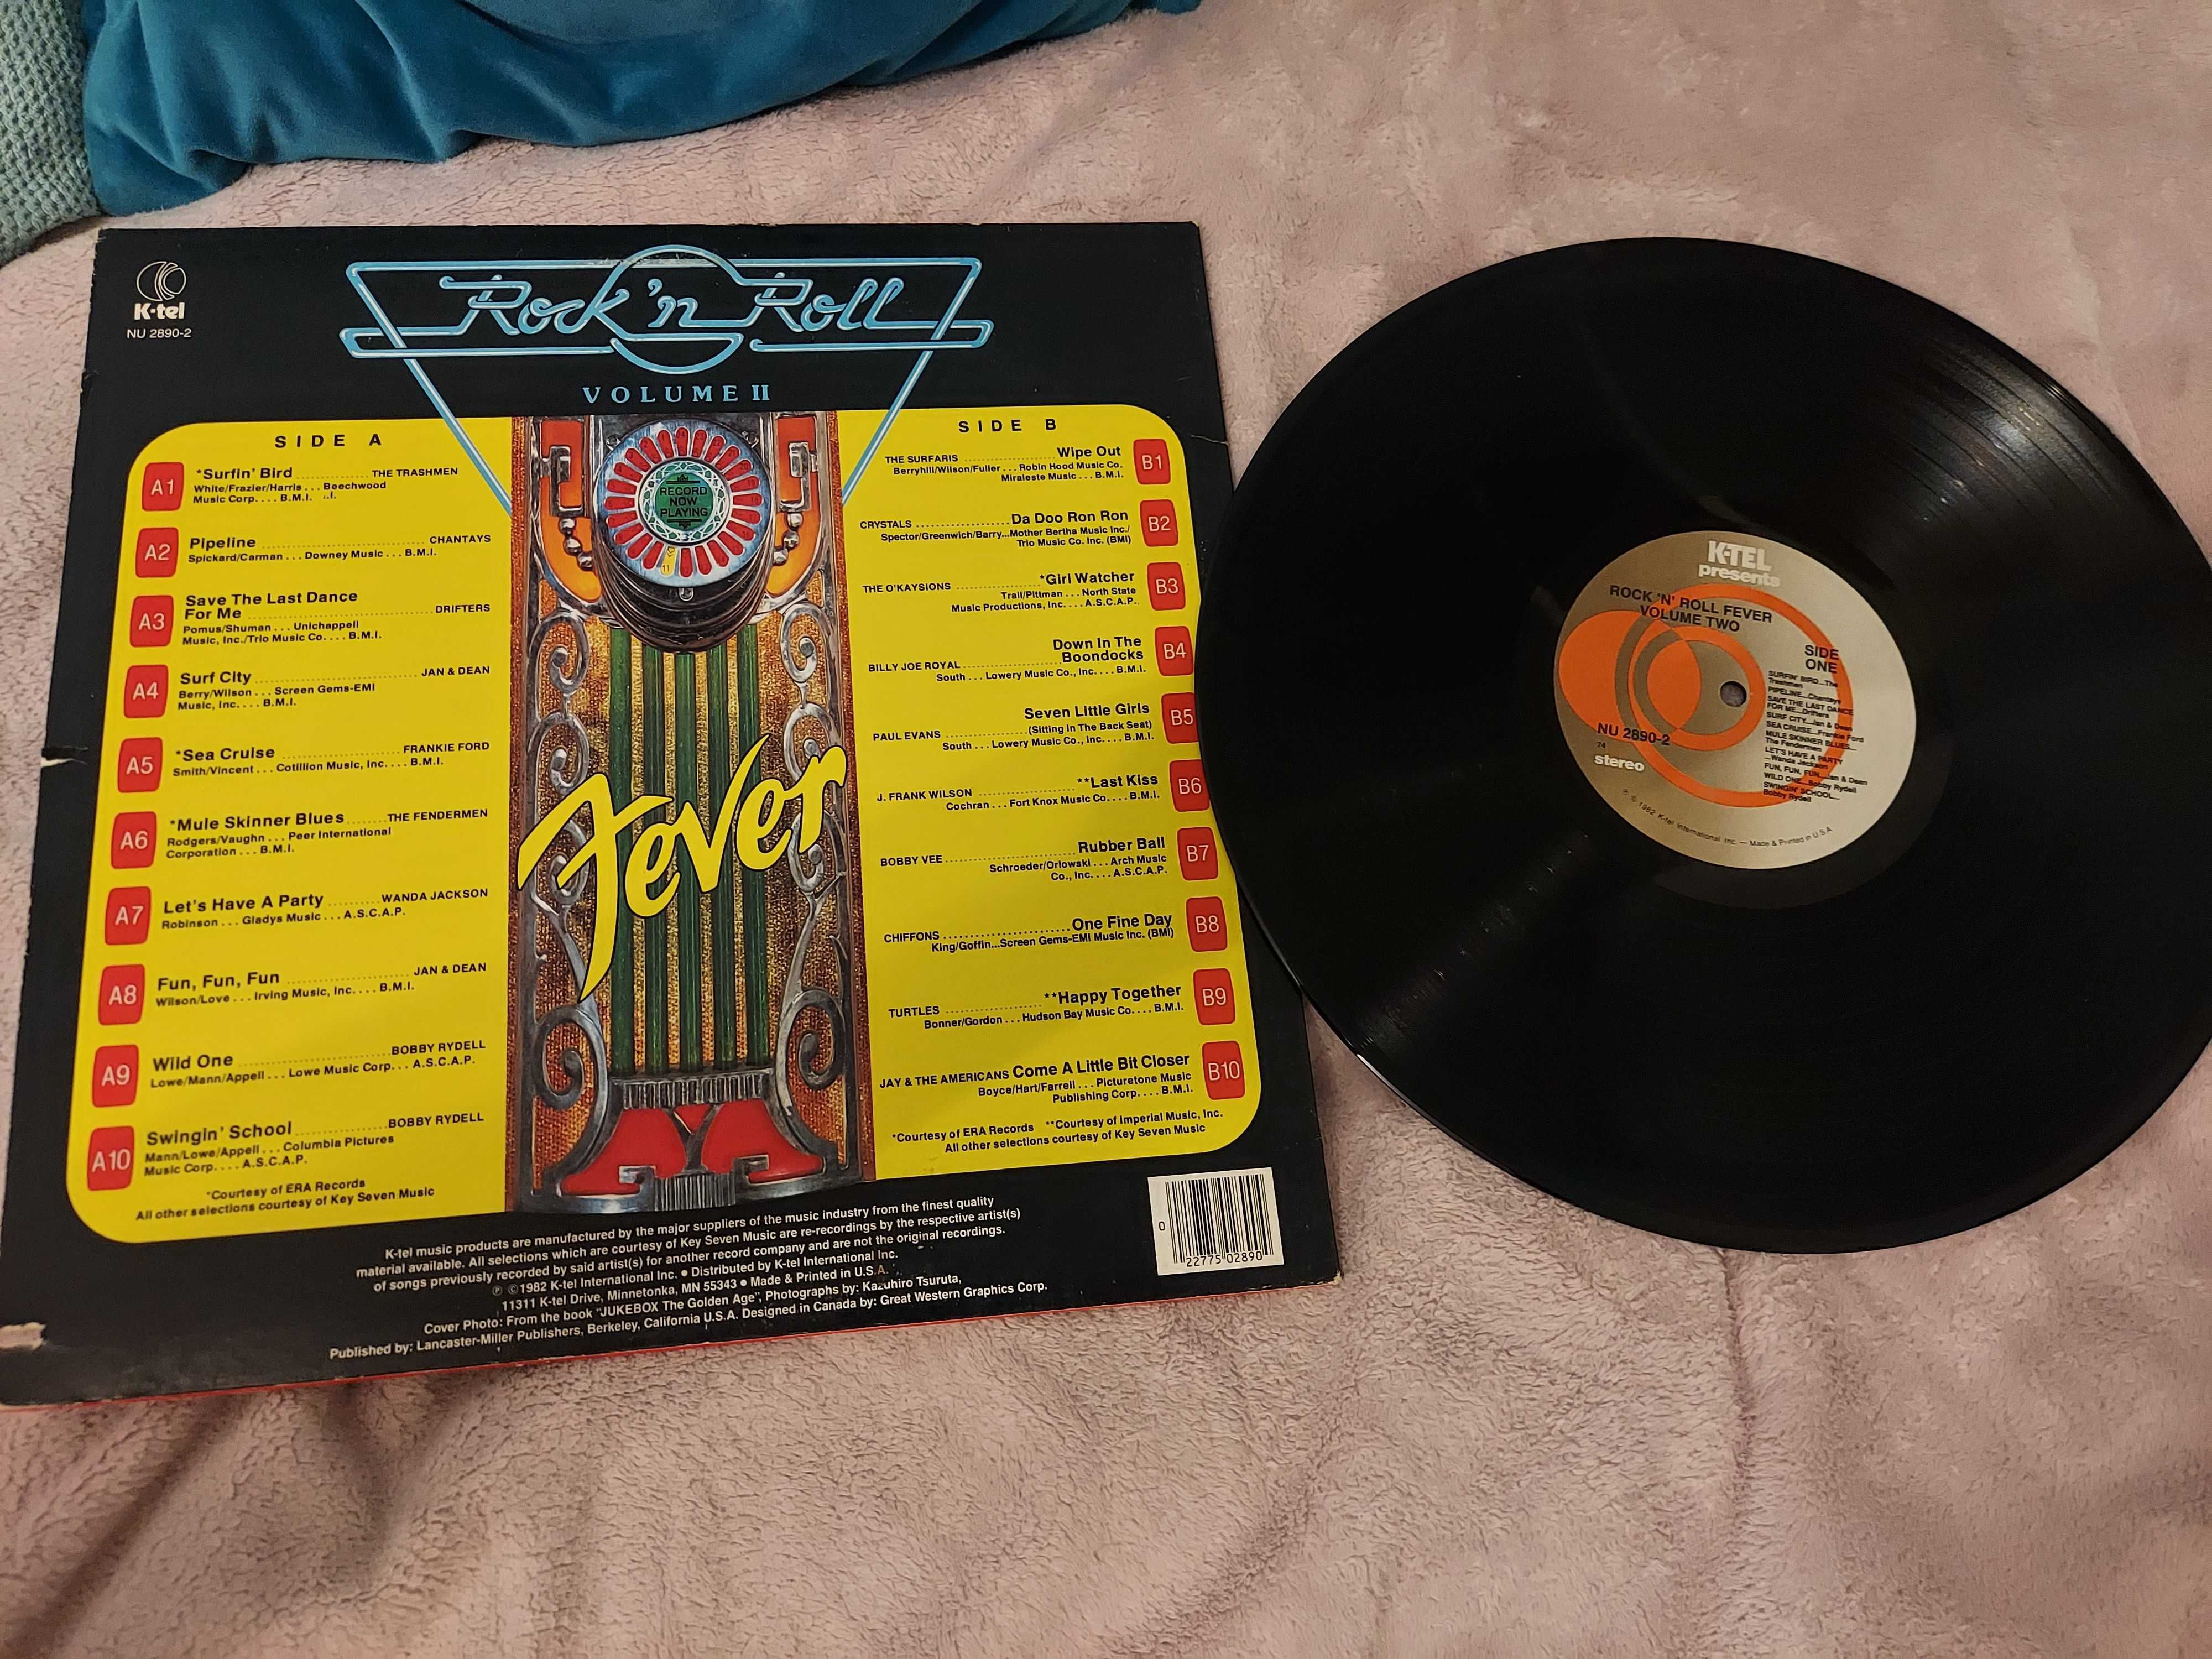 Rock 'n Roll Fever Volume II -Various